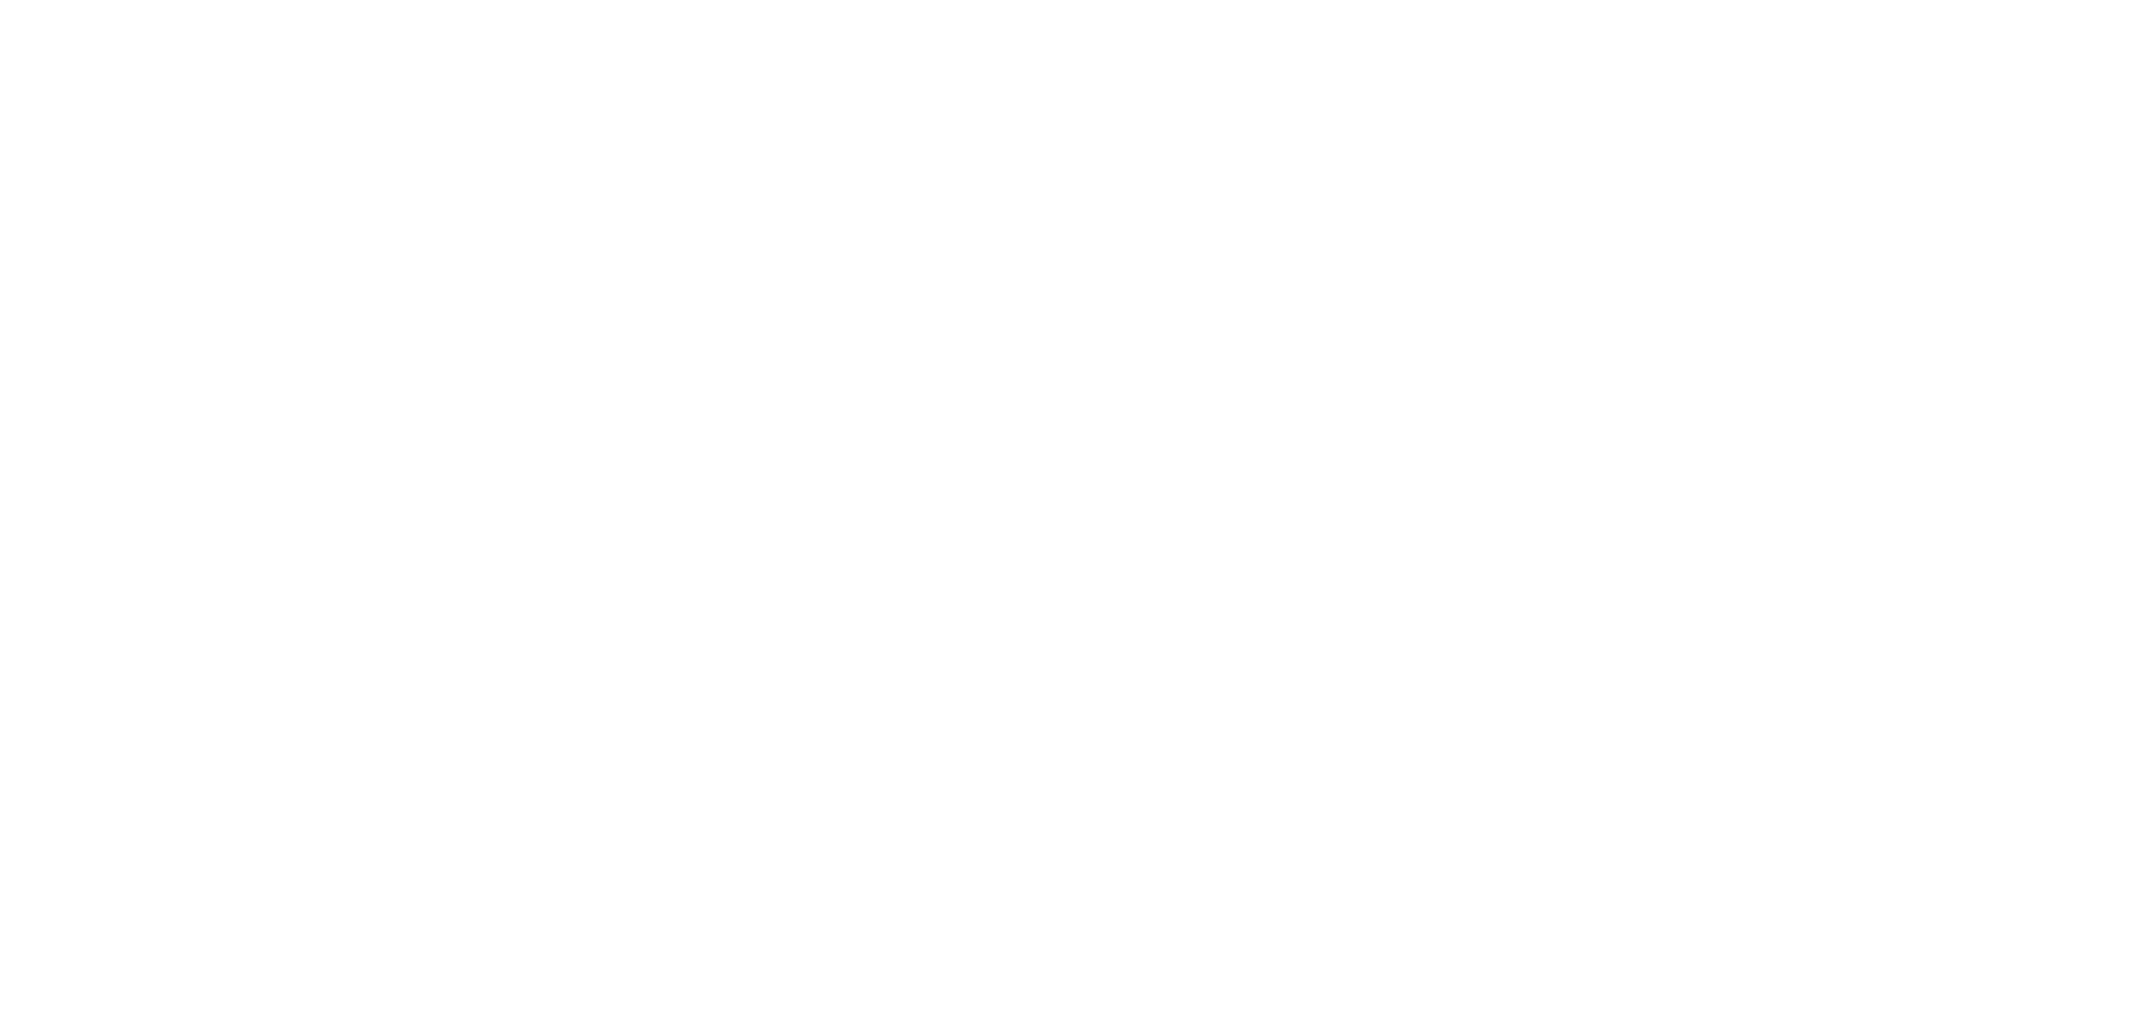 Joe P [community logo]